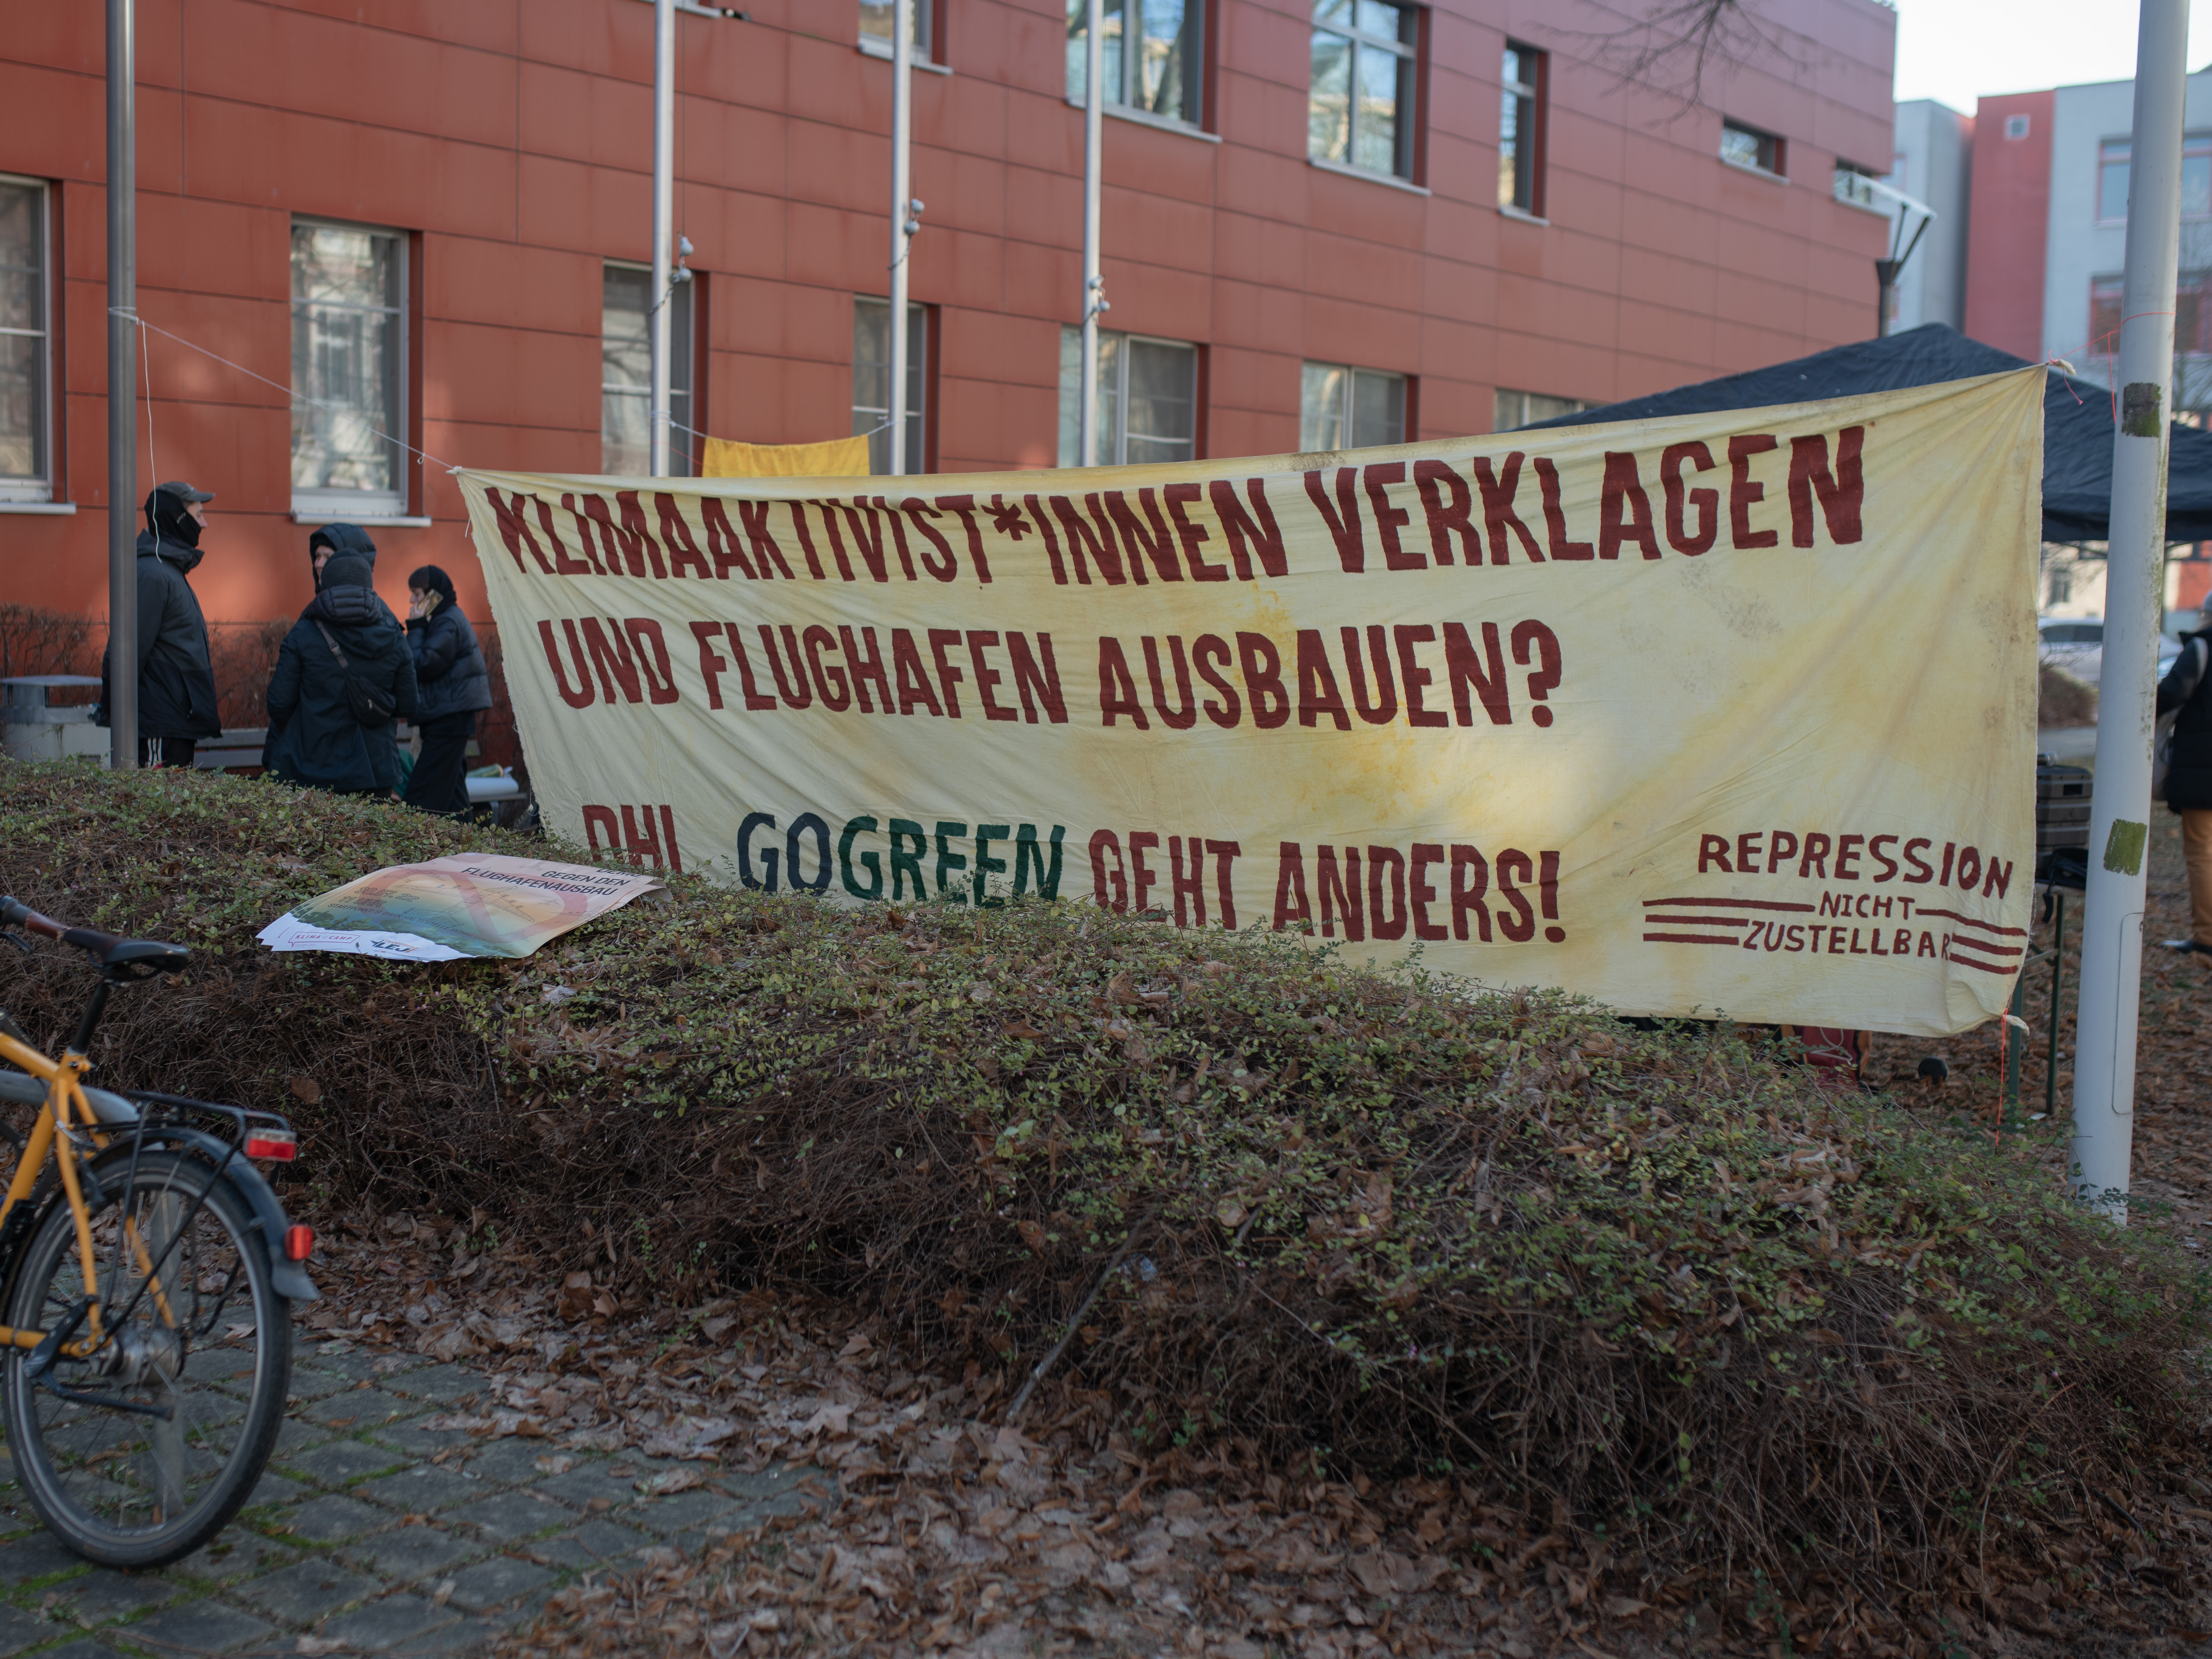   Freispruch für Aktivistinnen nach DHL-Blockade | Gericht sieht Nötigung bei Protest am Flughafen Leipzig 2021 als nicht gegeben. Entscheidungen in weiteren Verfahren sind ungewiss  